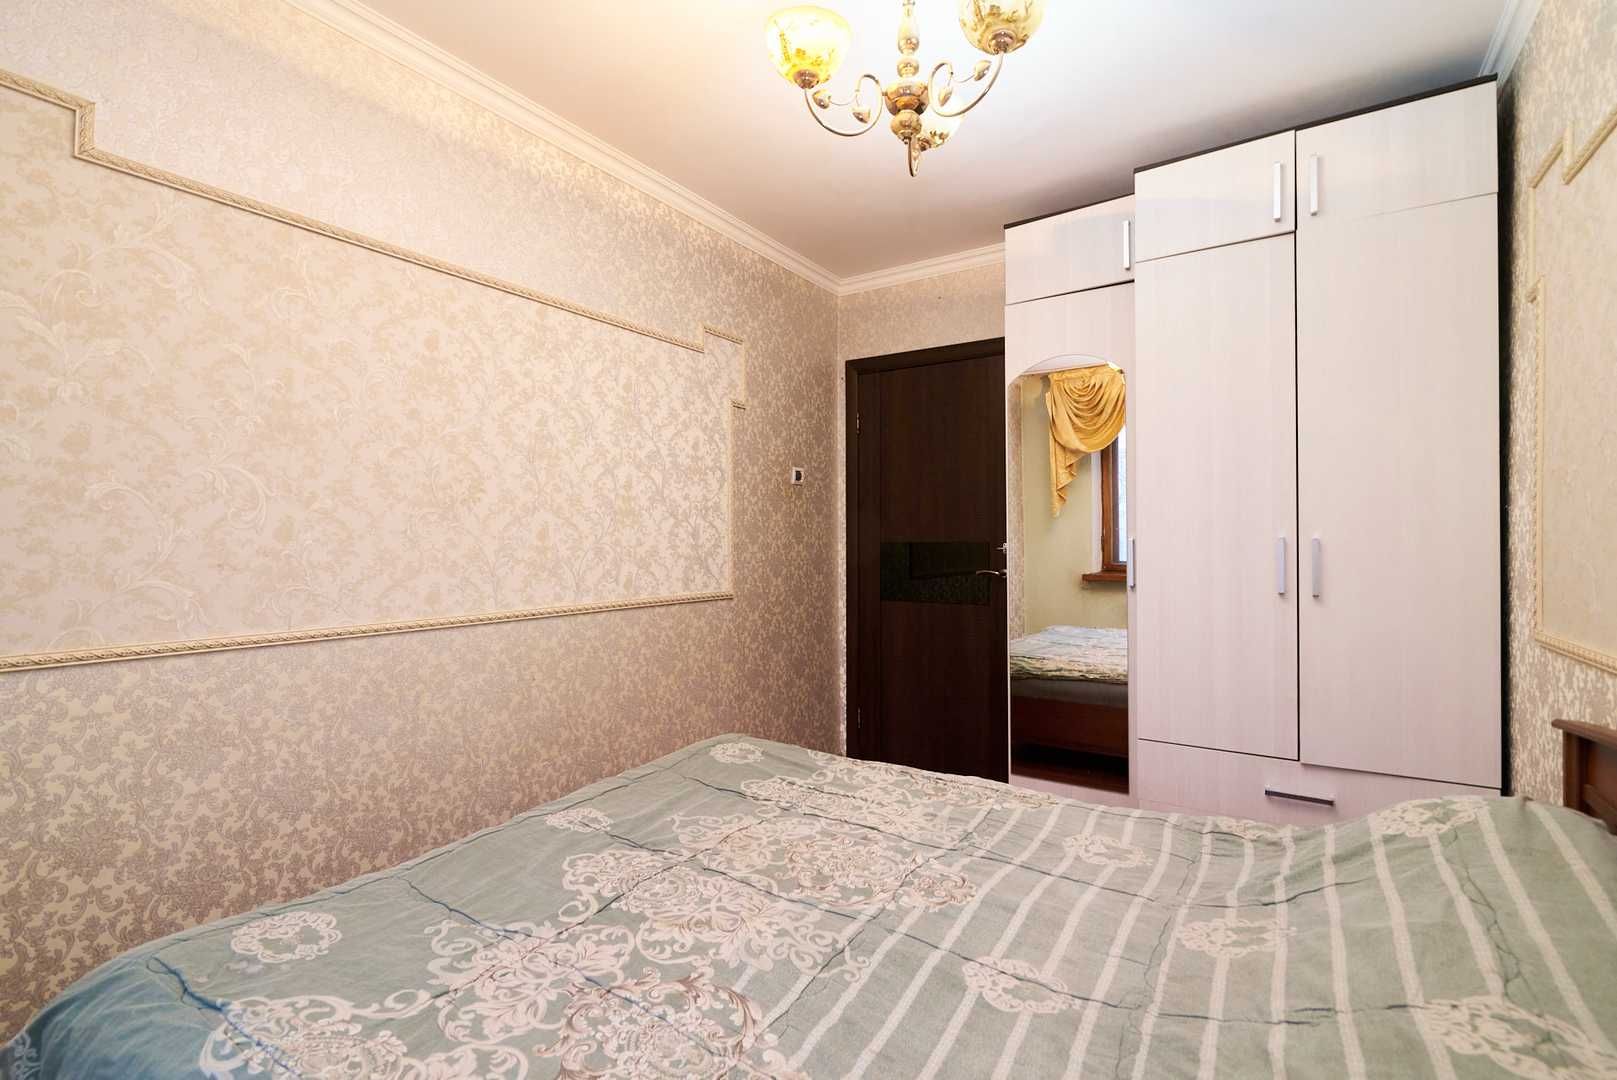 Срочная продажа 2-х комн квартиры на Жубанова